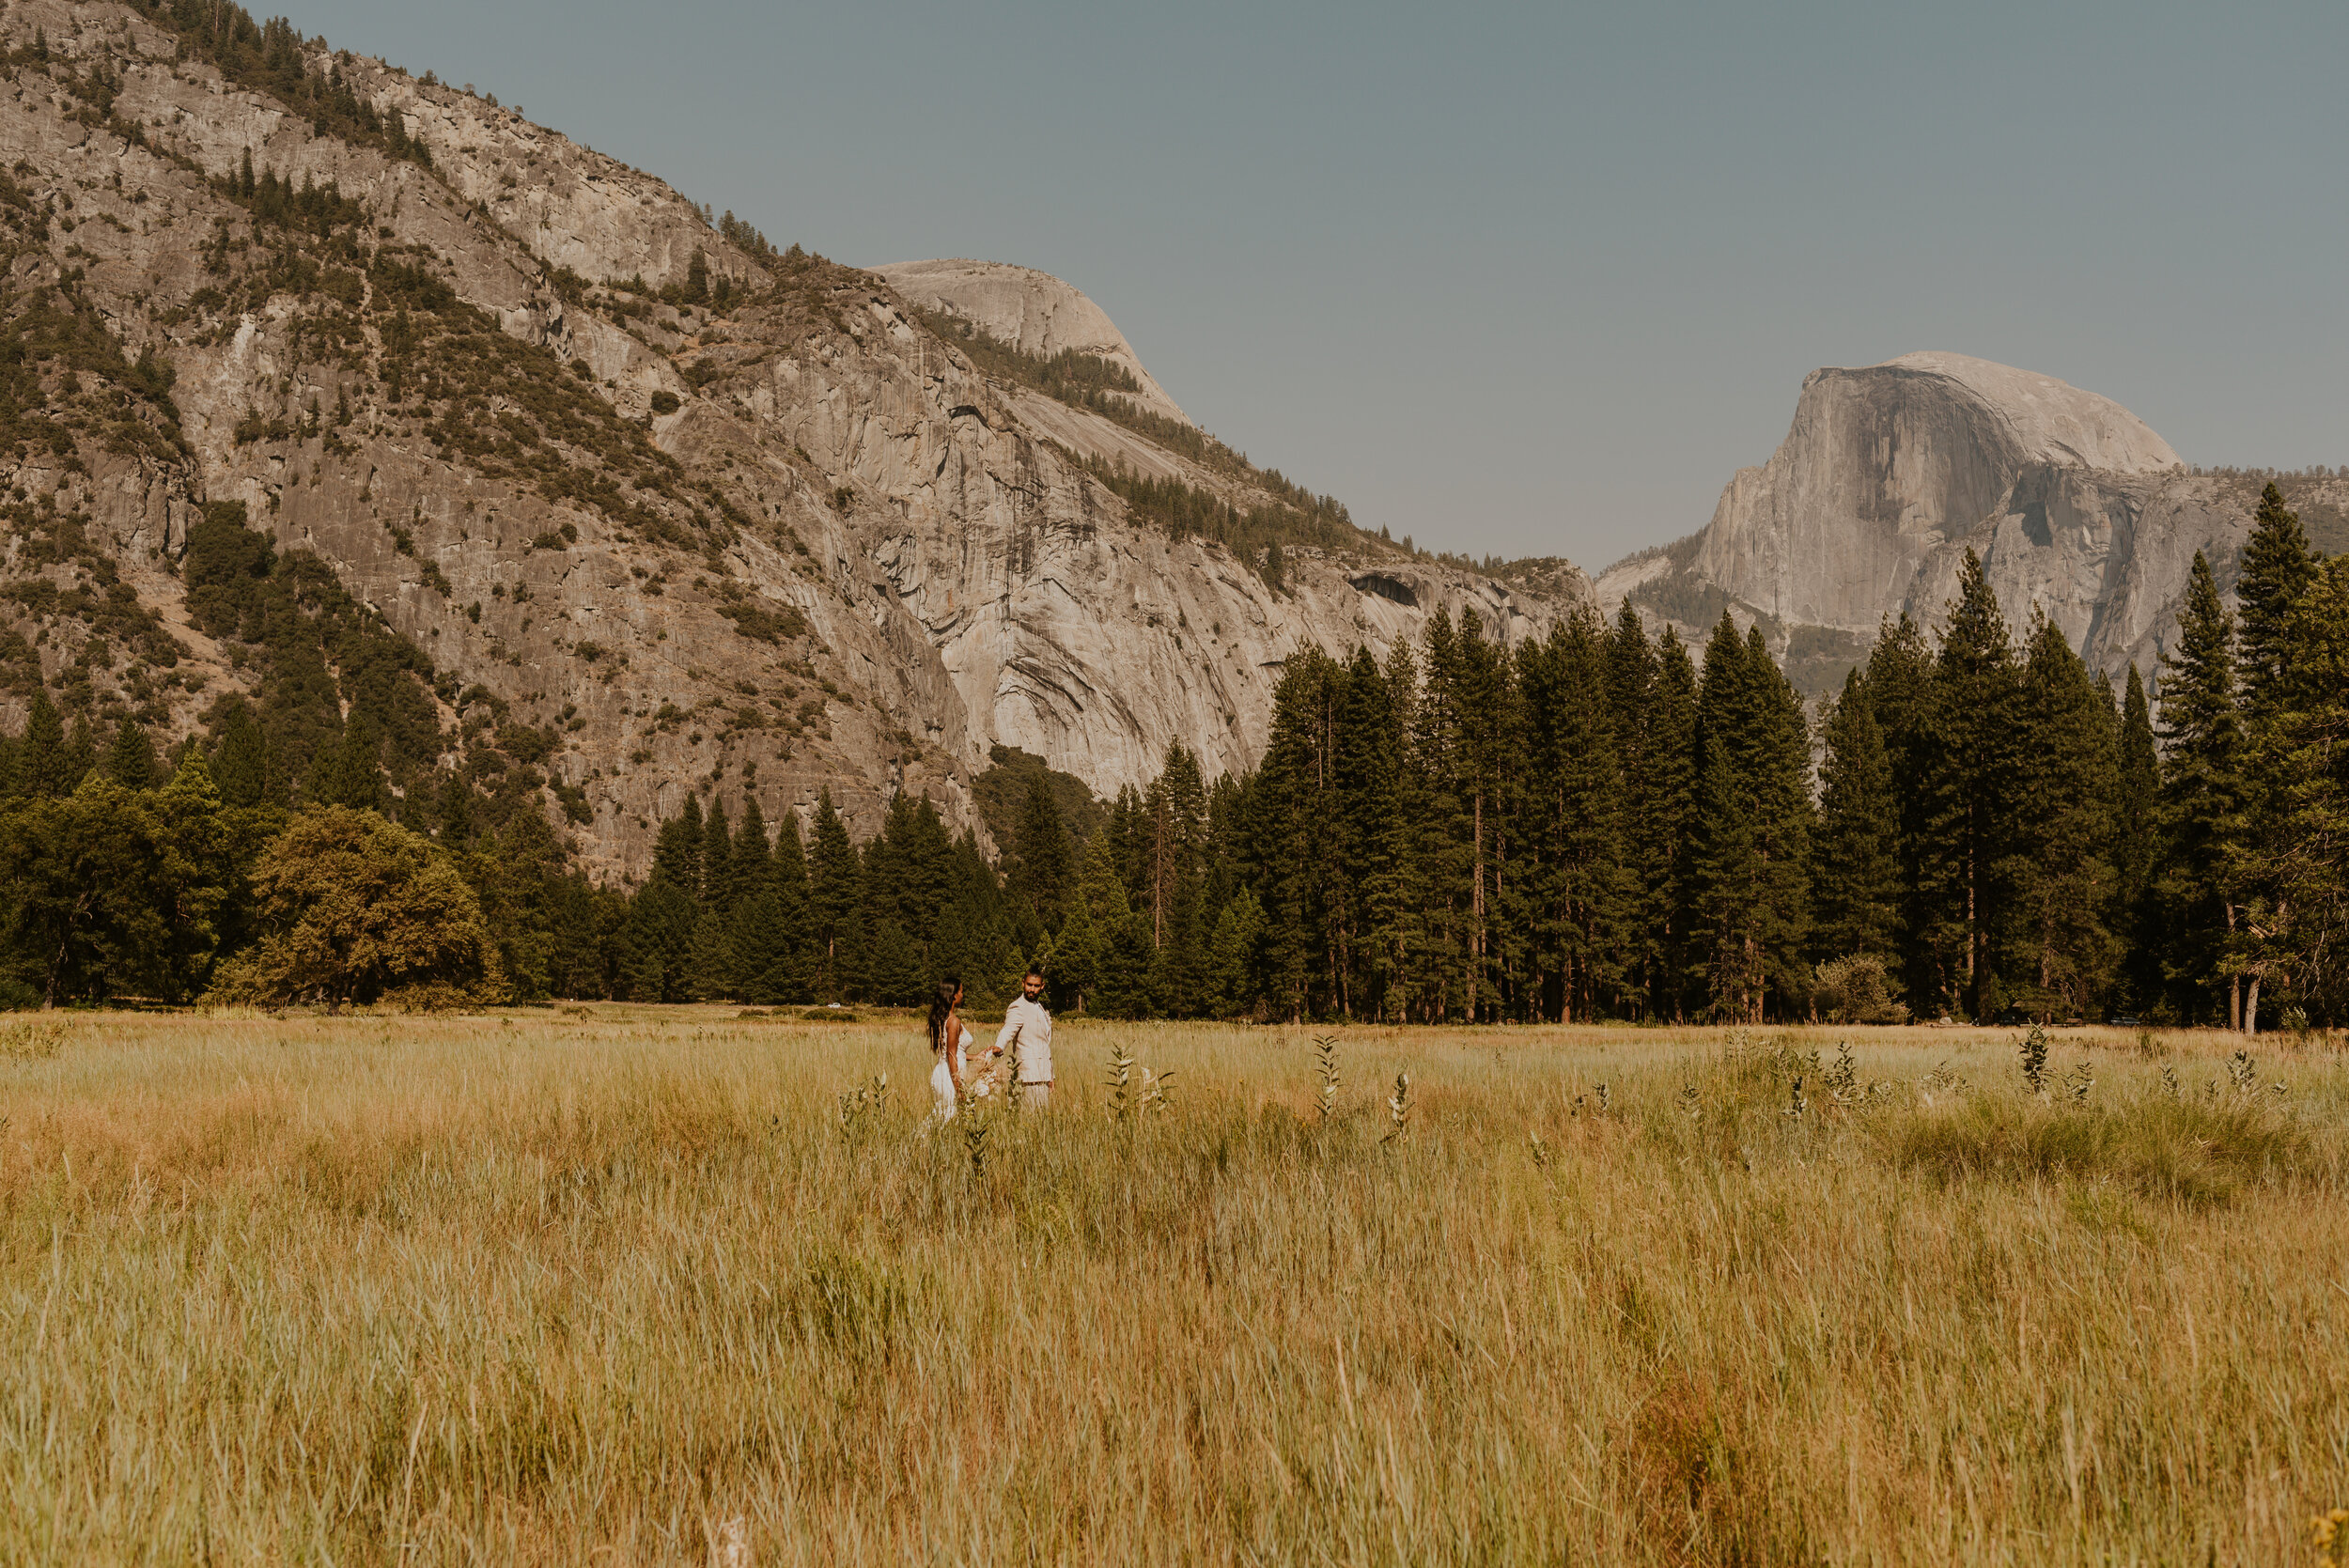 Yosemite Valley Elopement | Eloping in Yosemite National Park | Adventure Elopement Wedding | Yosemite Elopement Photographer | Cook’s Meadow | El Capitan Meadow